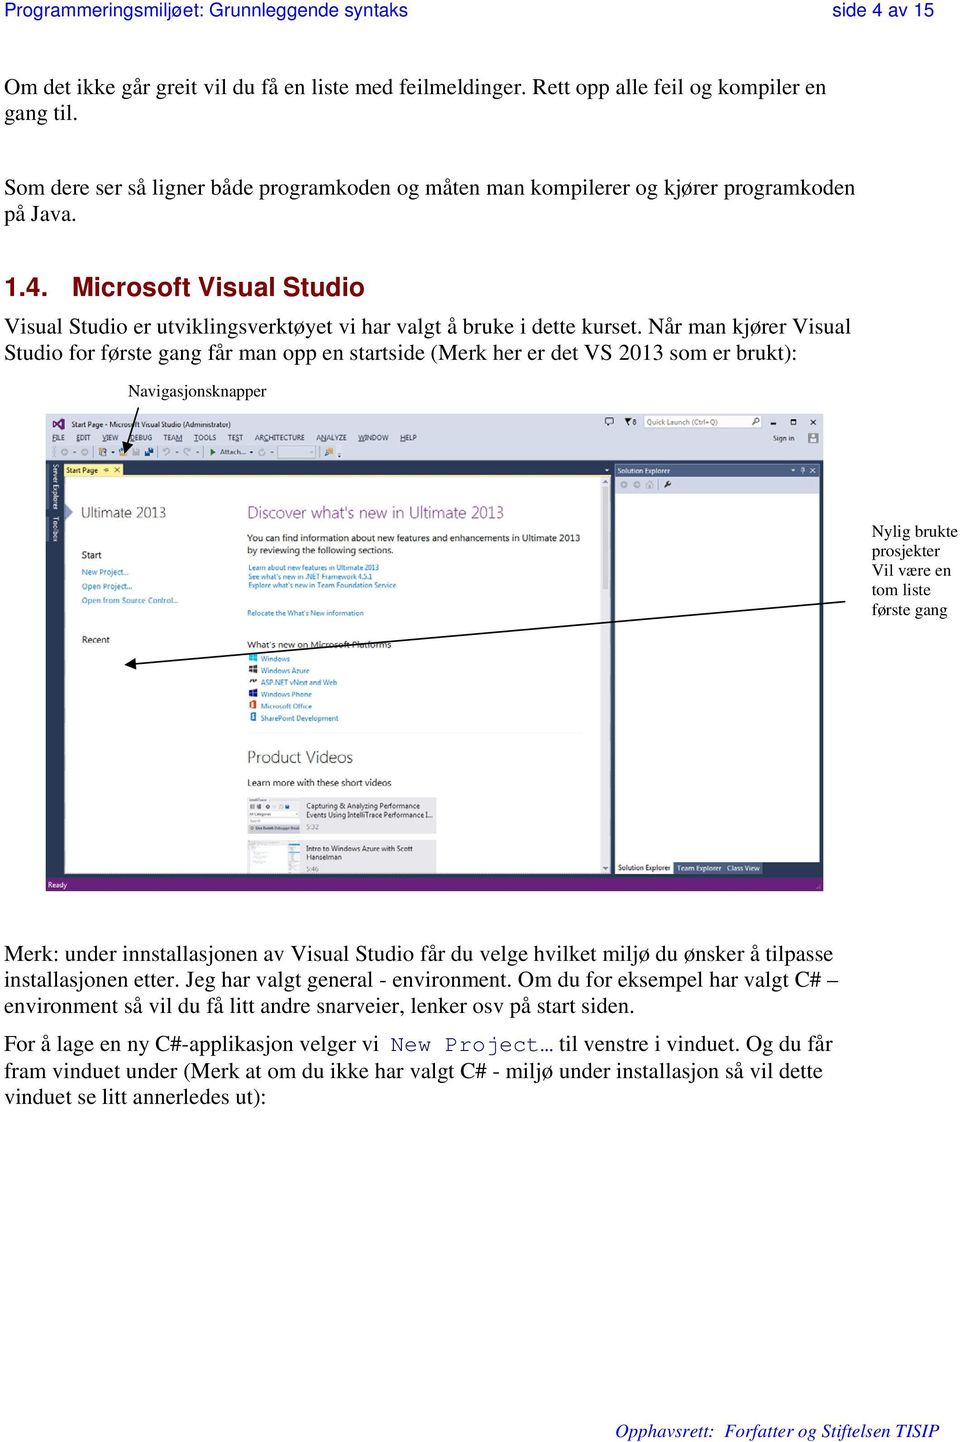 Når man kjører Visual Studio for første gang får man opp en startside (Merk her er det VS 2013 som er brukt): Navigasjonsknapper Nylig brukte prosjekter Vil være en tom liste første gang Merk: under